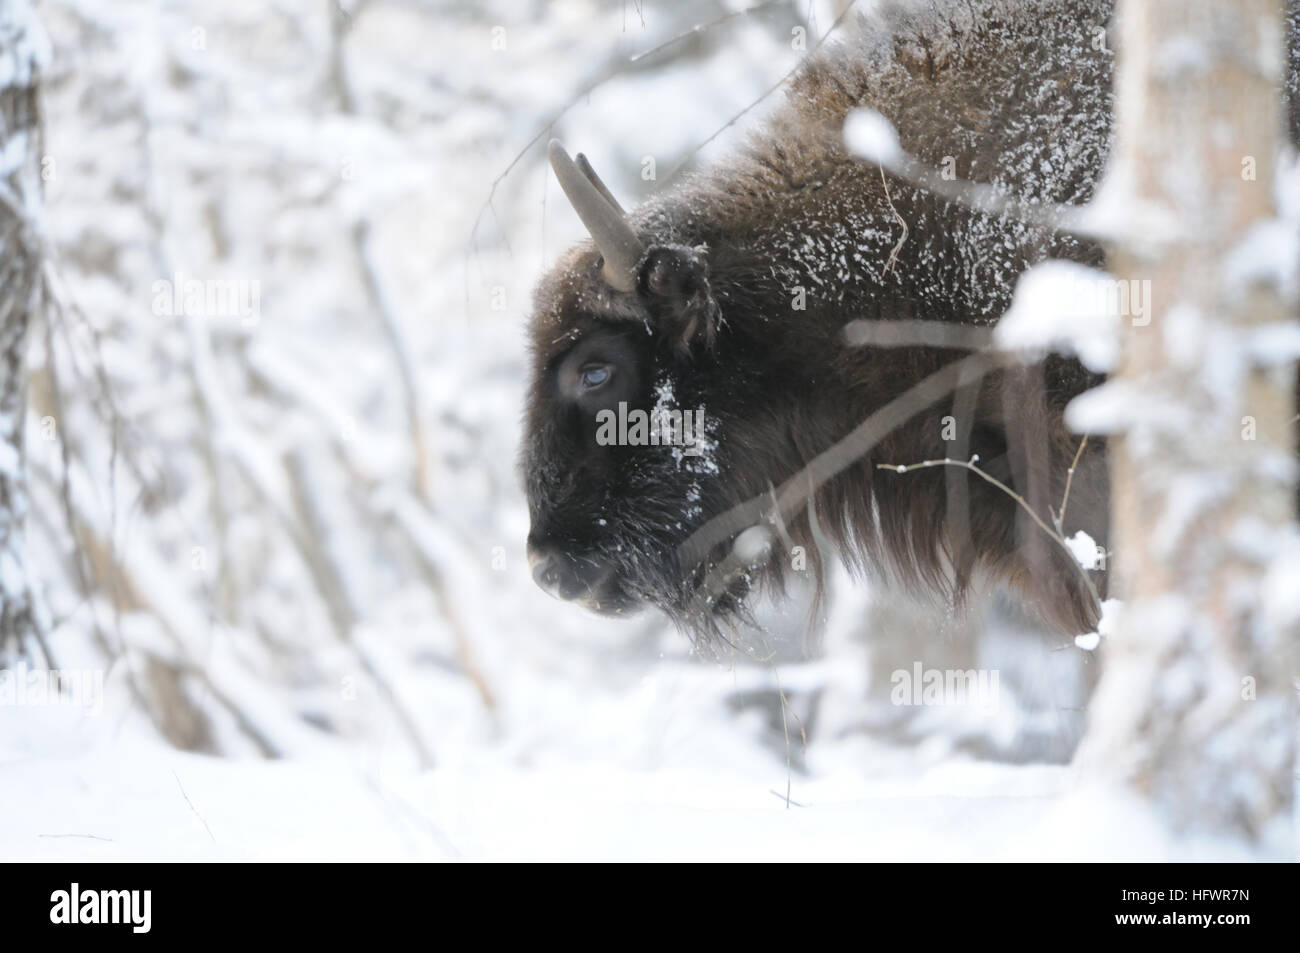 Bison d'Europe (bison, Bison bonasus) dans la forêt d'hiver. Parc national de la région de Kalouga, Ugra, la Russie. Décembre, 2016 Banque D'Images